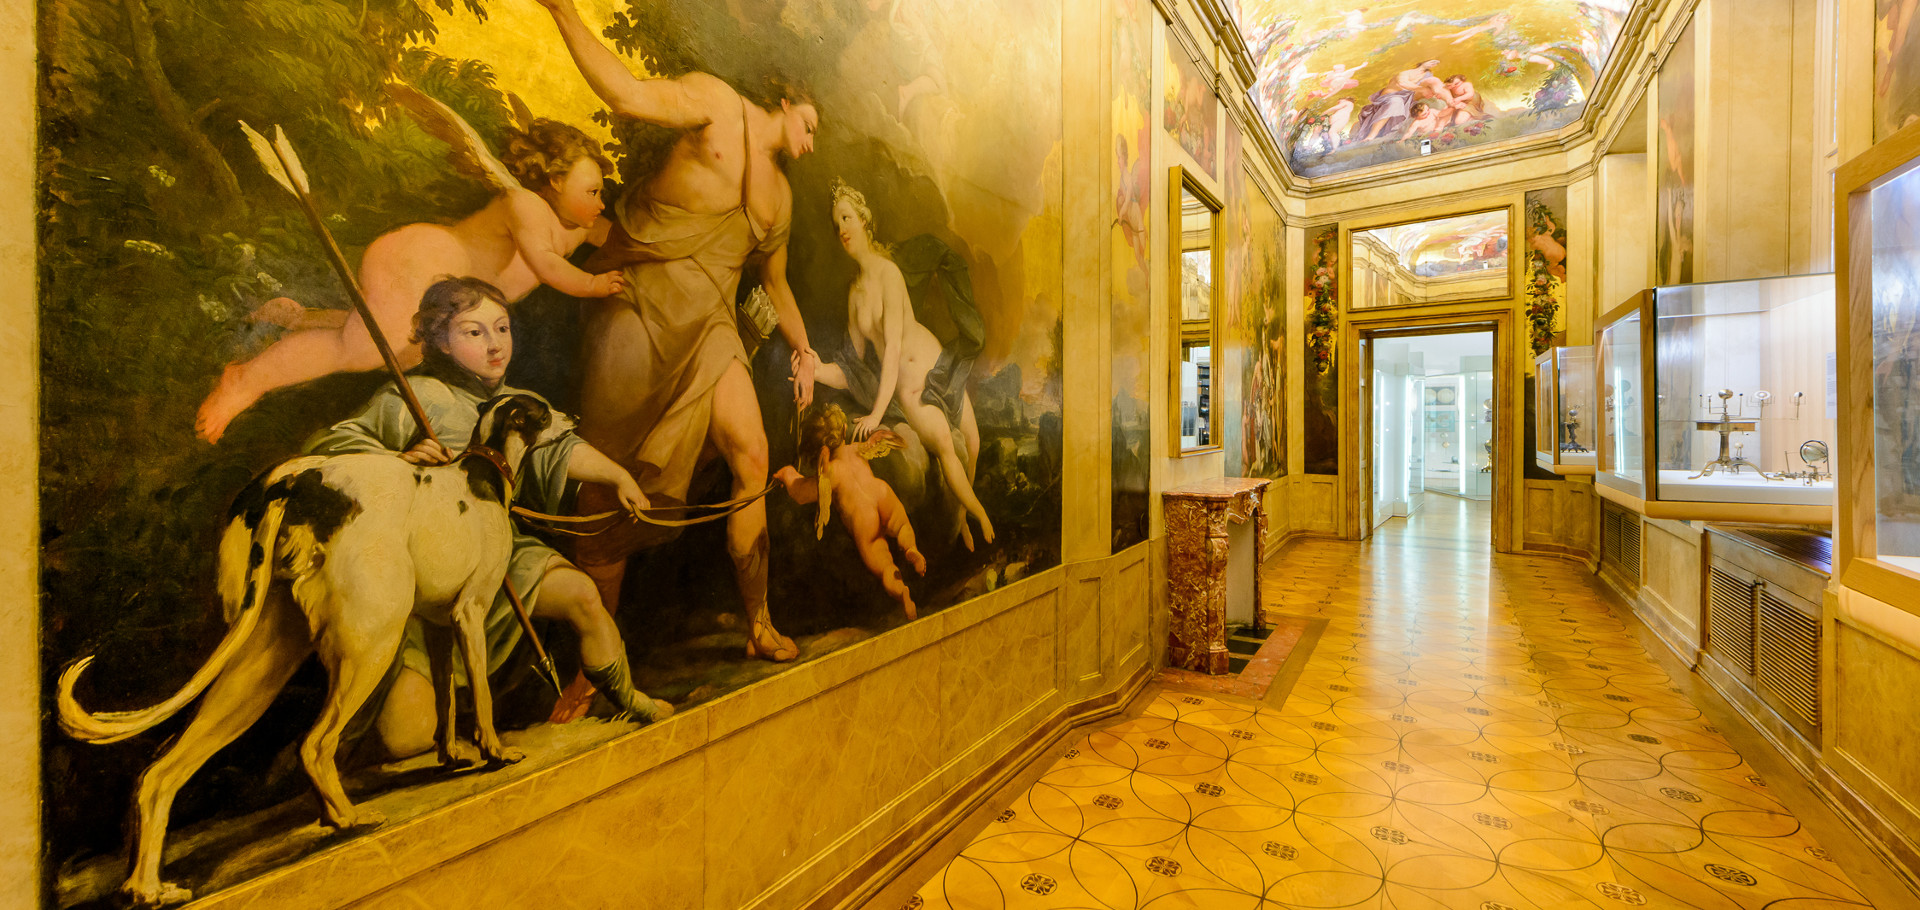 Blick durchs prächtige Goldkabinett im Globenmuseum, Gemälde auf der linken Seite, Vitrinen rechts